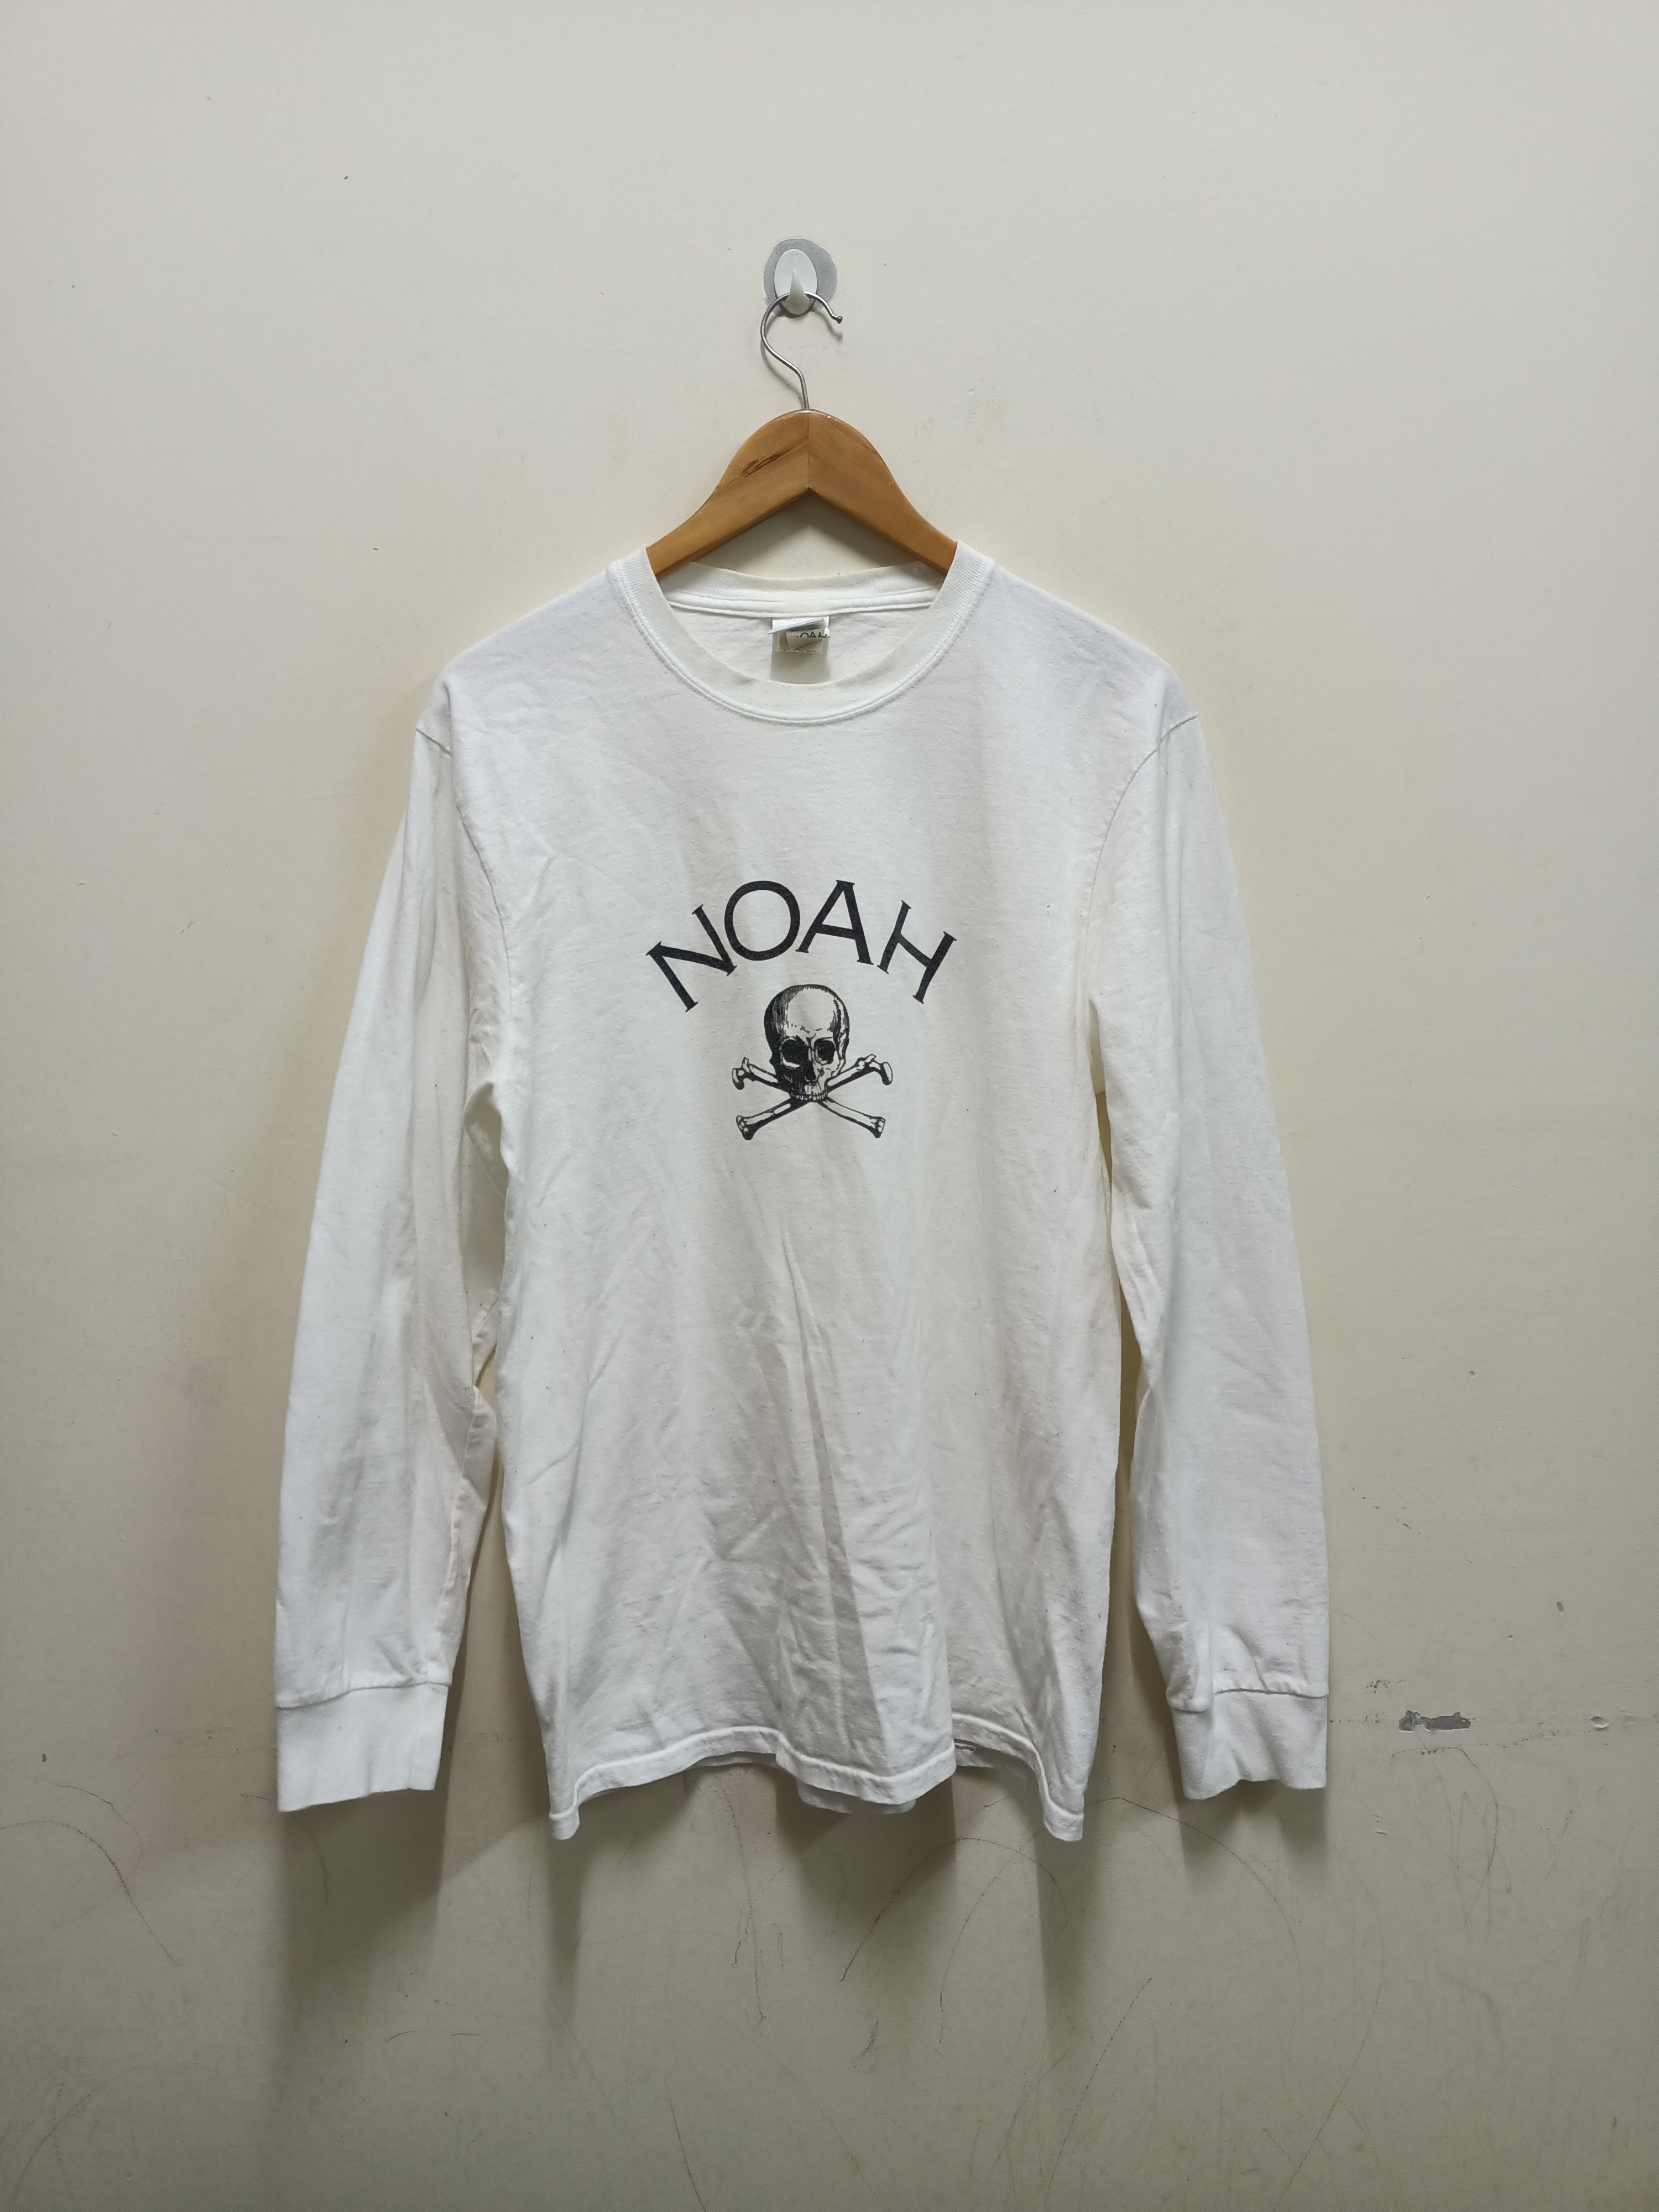 NOAH longsleeve skull cross bone t-shirt - 1